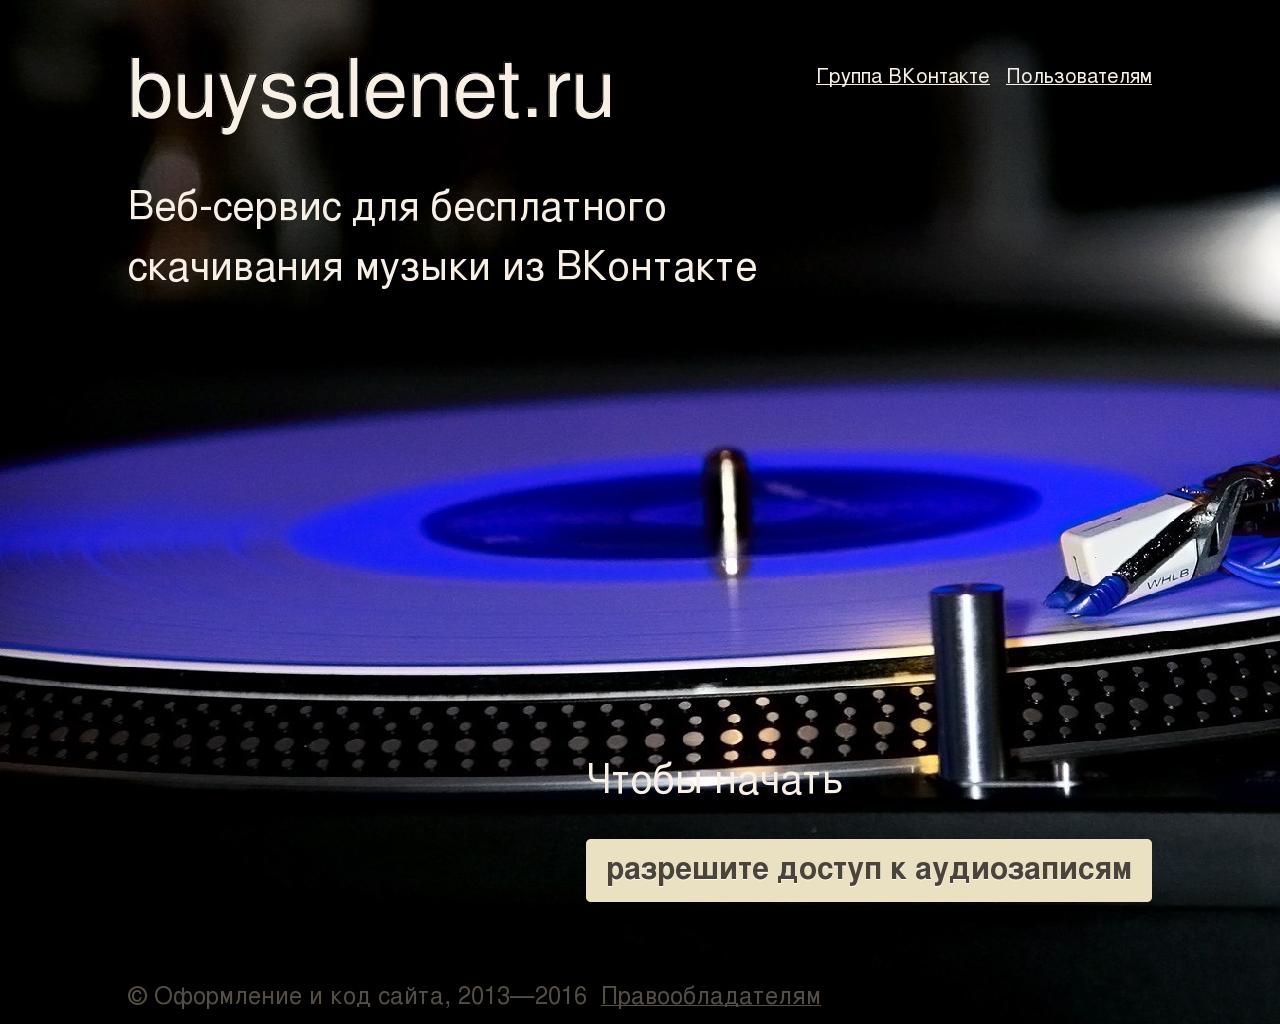 Изображение сайта buysalenet.ru в разрешении 1280x1024